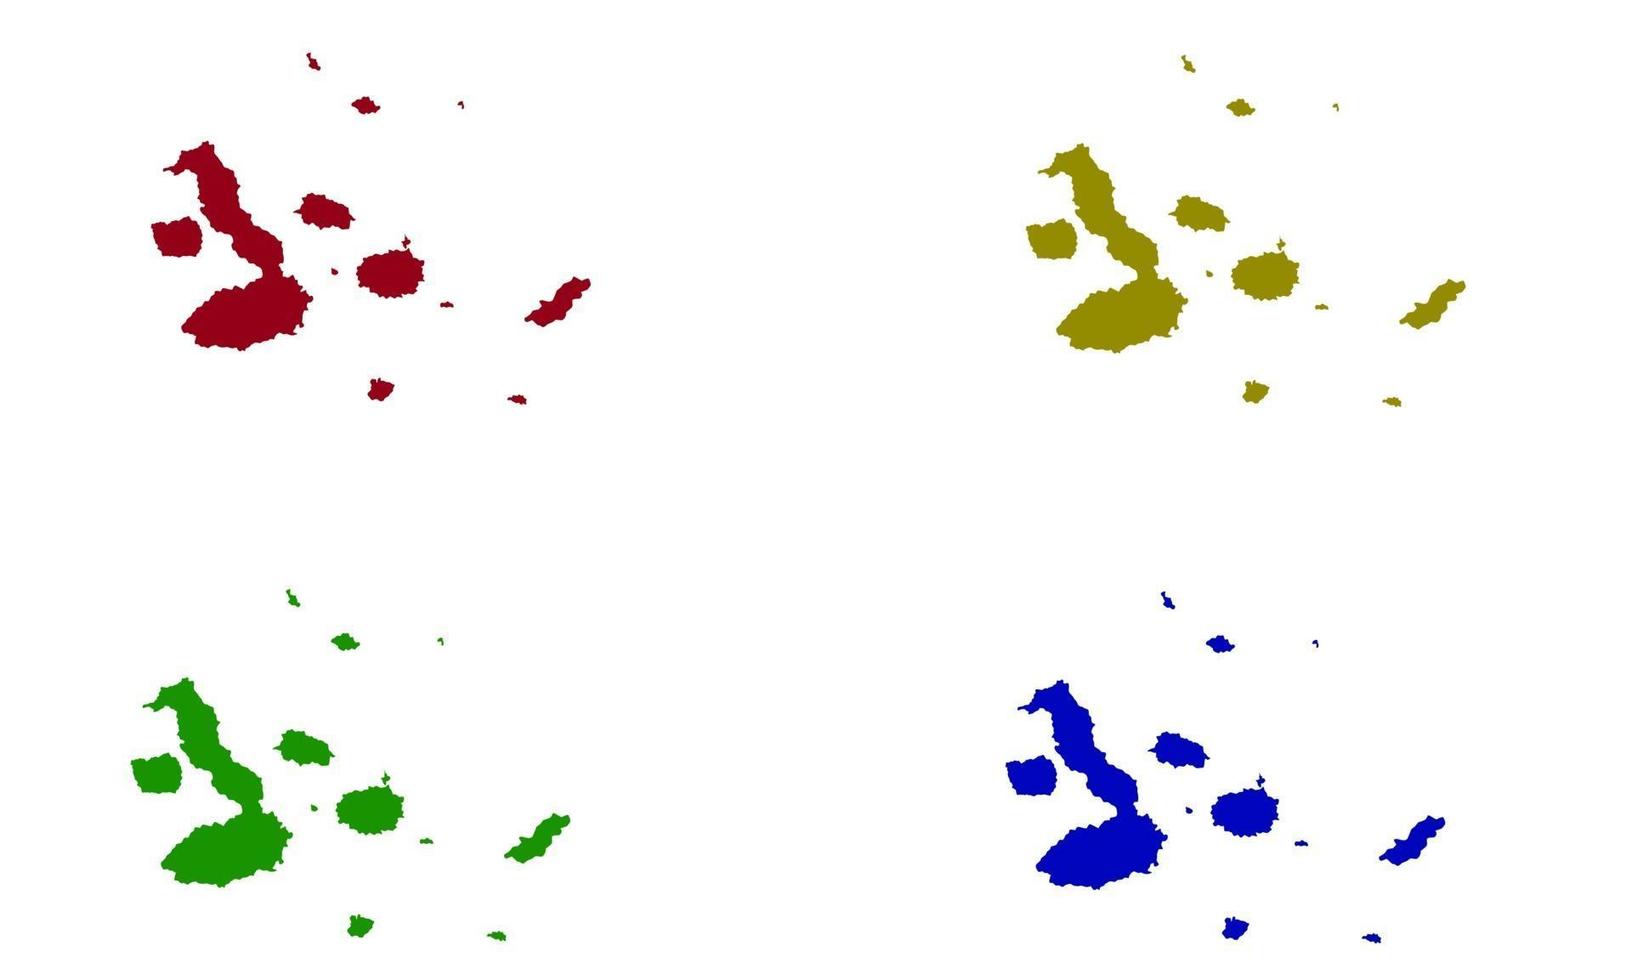 mappa silhouette delle isole galapagos in ecuador vettore